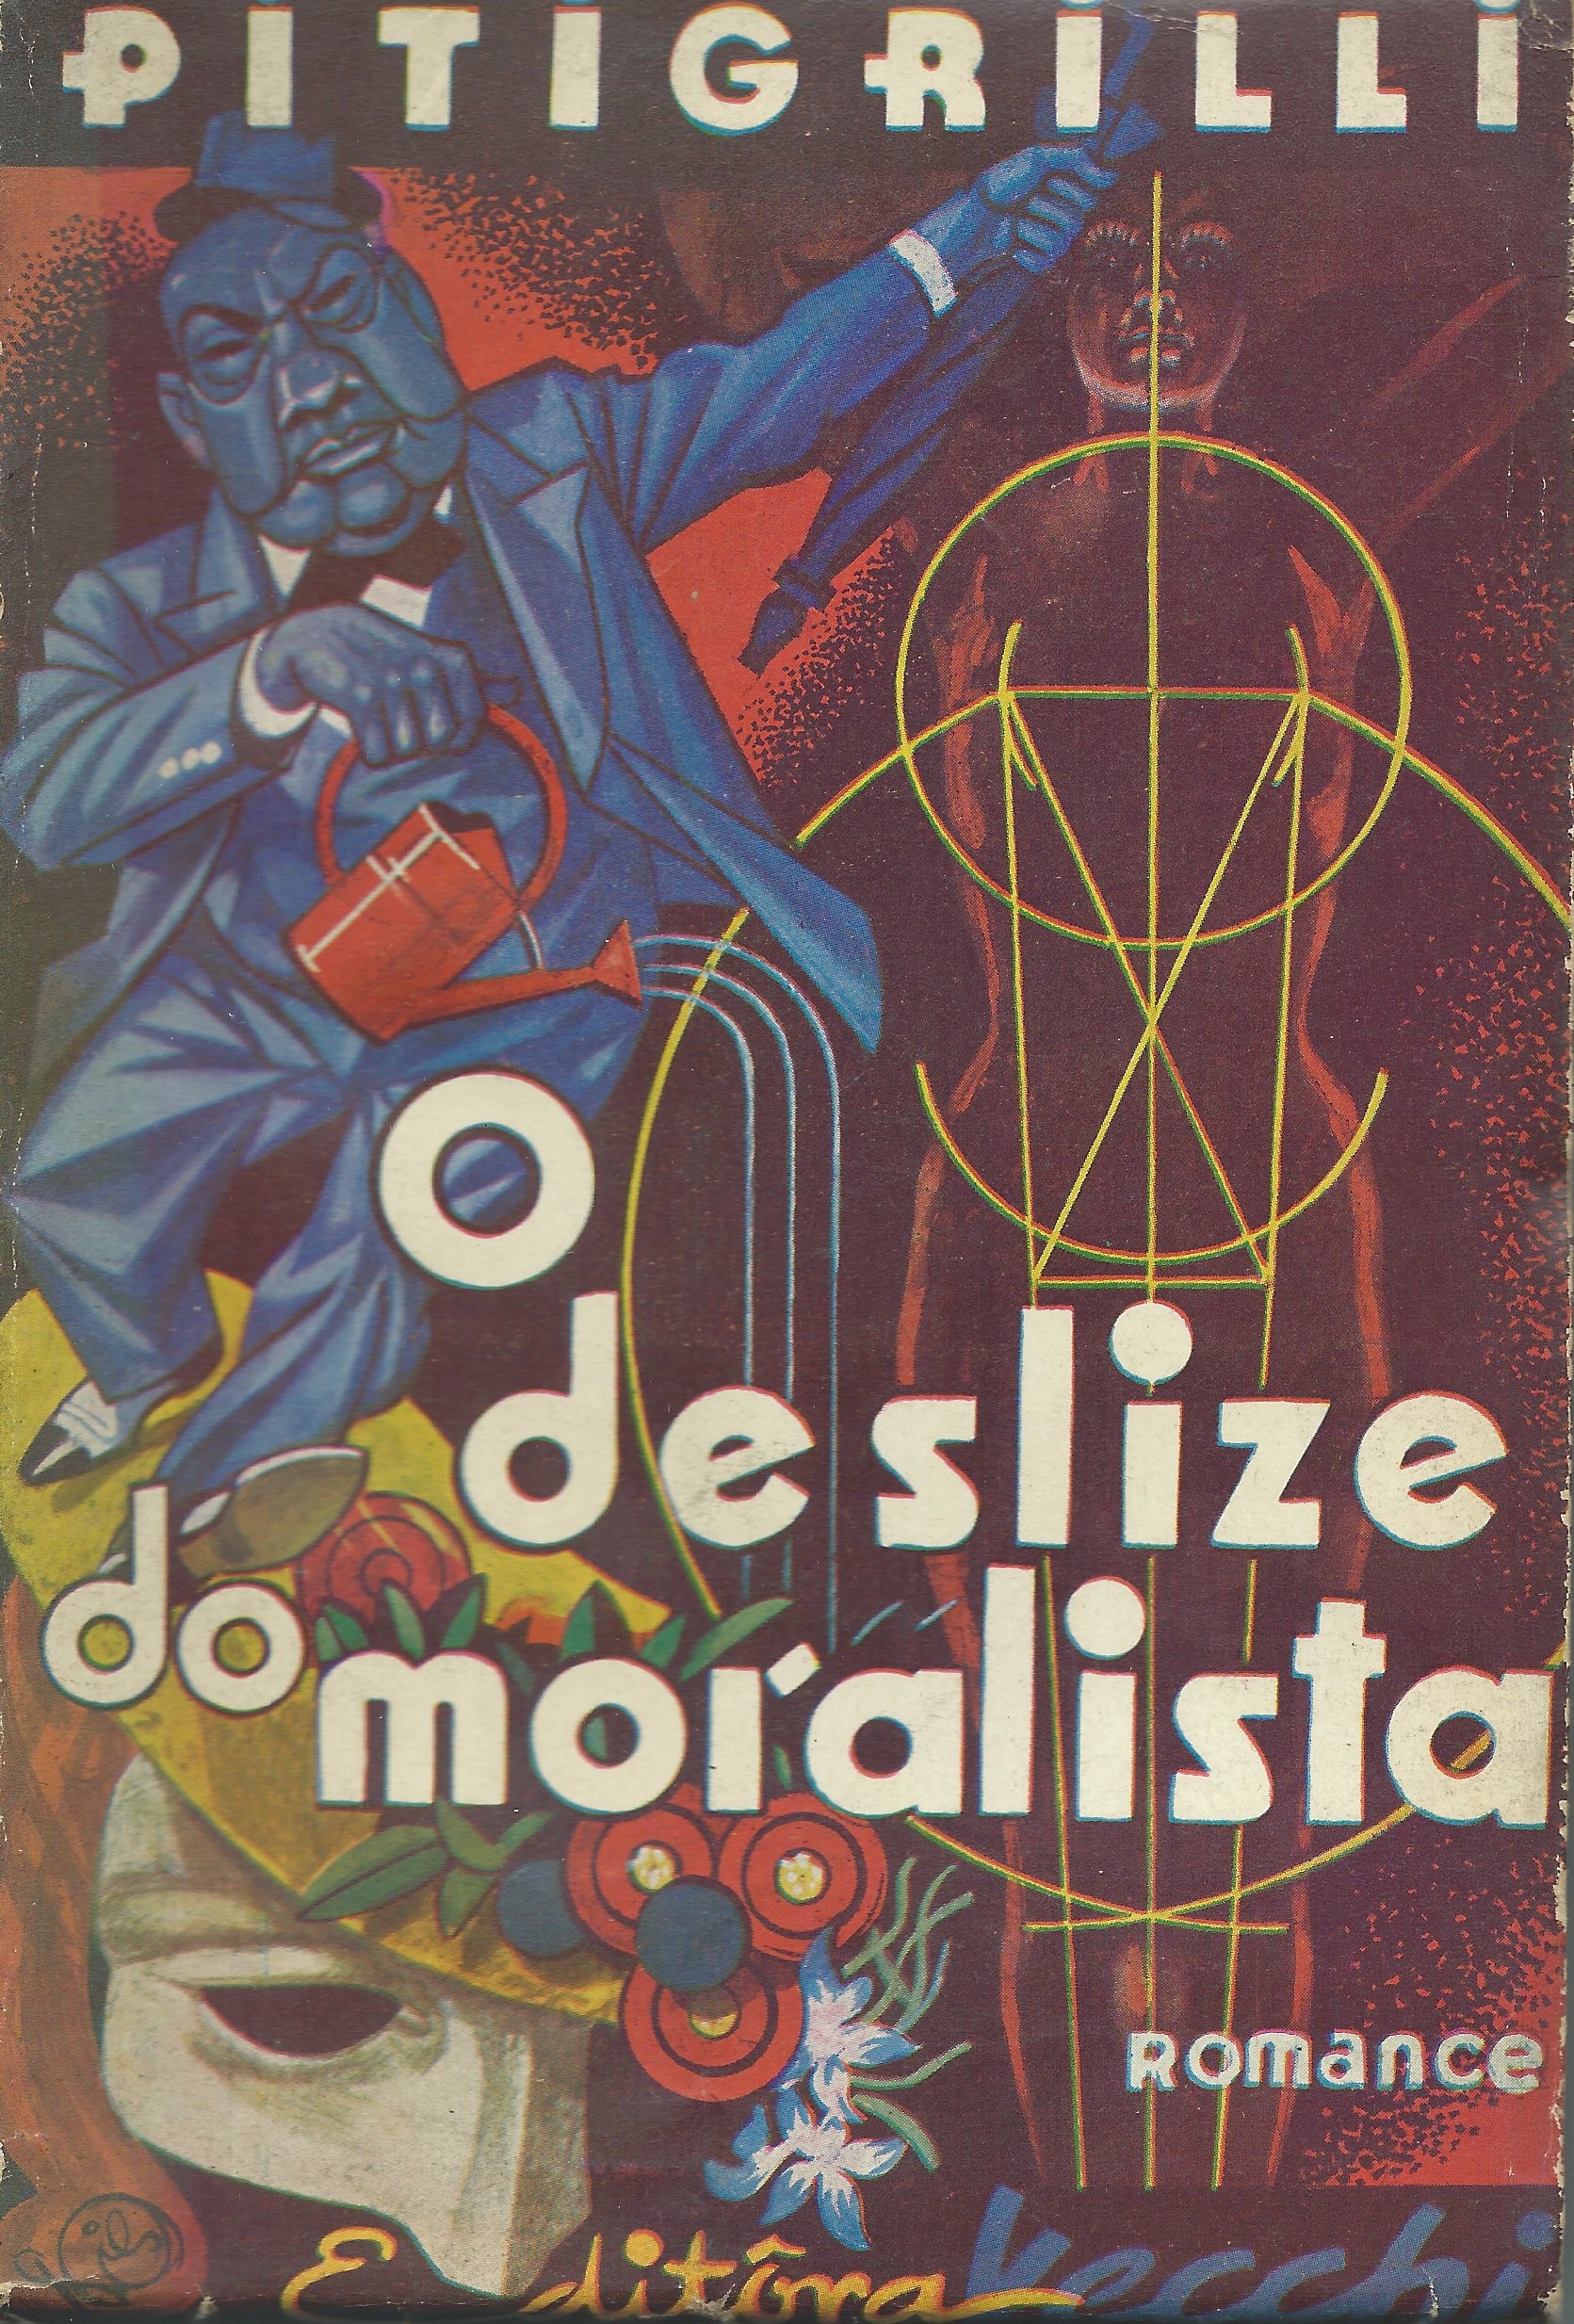 https://www.literaturabrasileira.ufsc.br/_images/obras/o_deslize_do_moralista.jpg